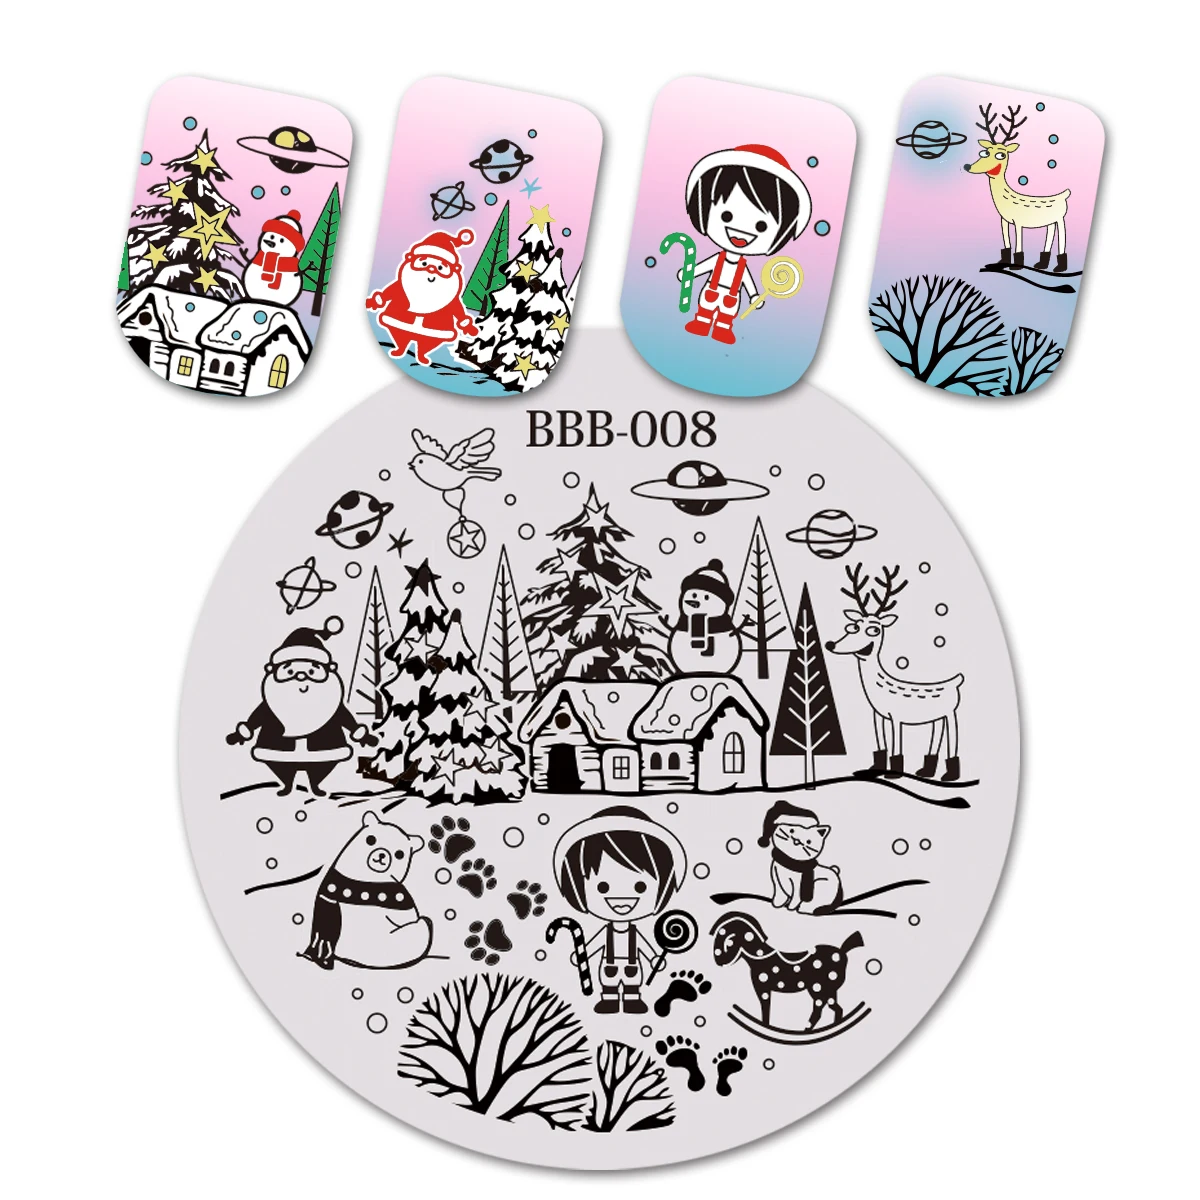 1 шт BeautyBigBang Круглая Пластина для штамповки ногтей Рождественская тема дерево маленькая девочка шаблон для дизайна ногтей для штамповки изображения пластины BBB-008